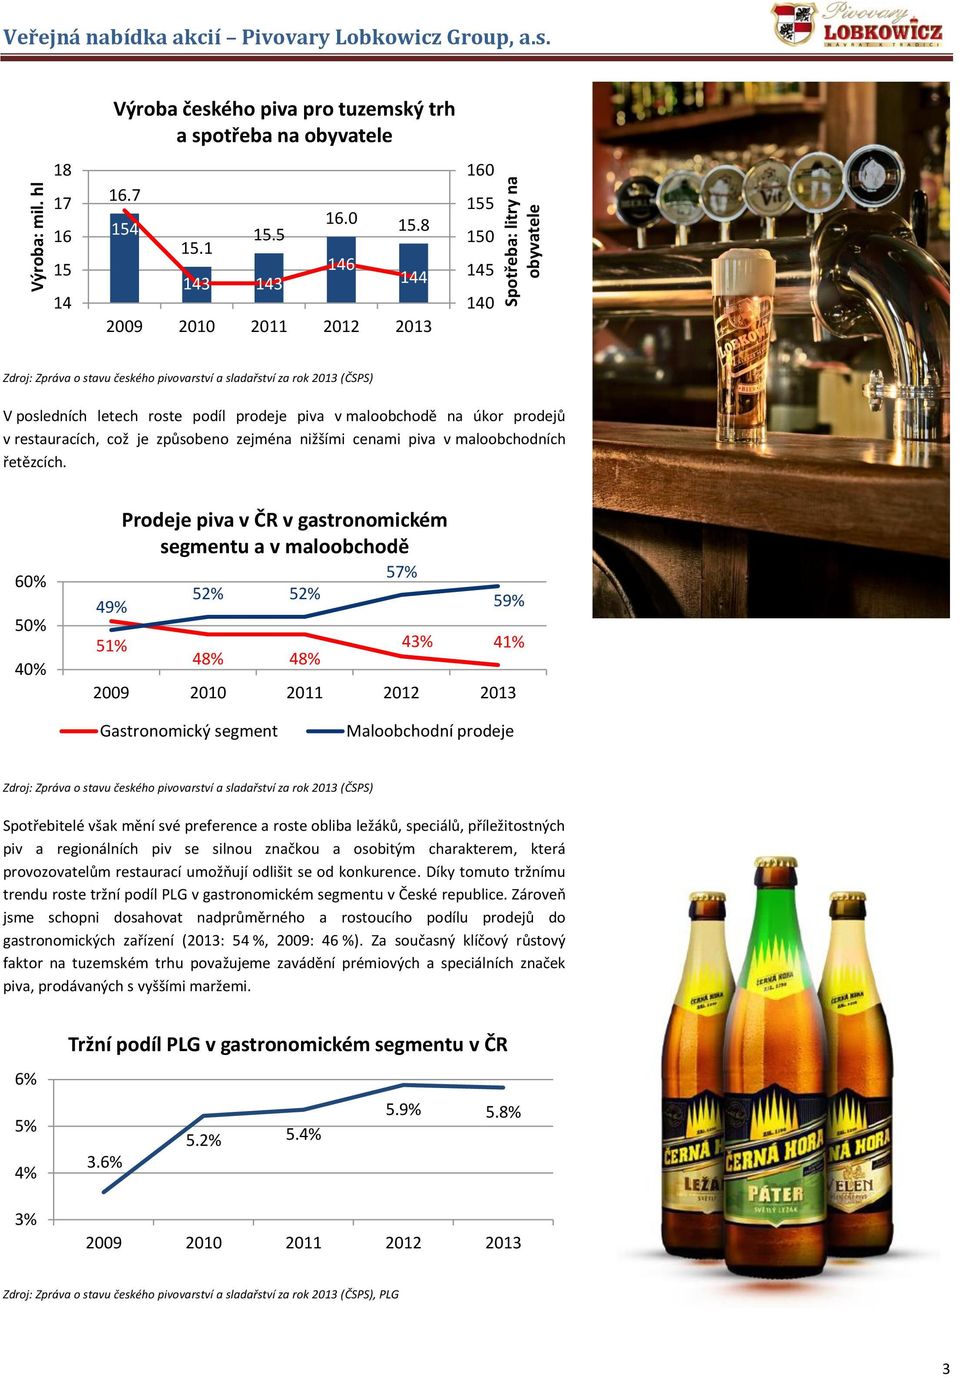 8 146 144 160 155 150 145 140 V posledních letech roste podíl prodeje piva v maloobchodě na úkor prodejů v restauracích, což je způsobeno zejména nižšími cenami piva v maloobchodních řetězcích.